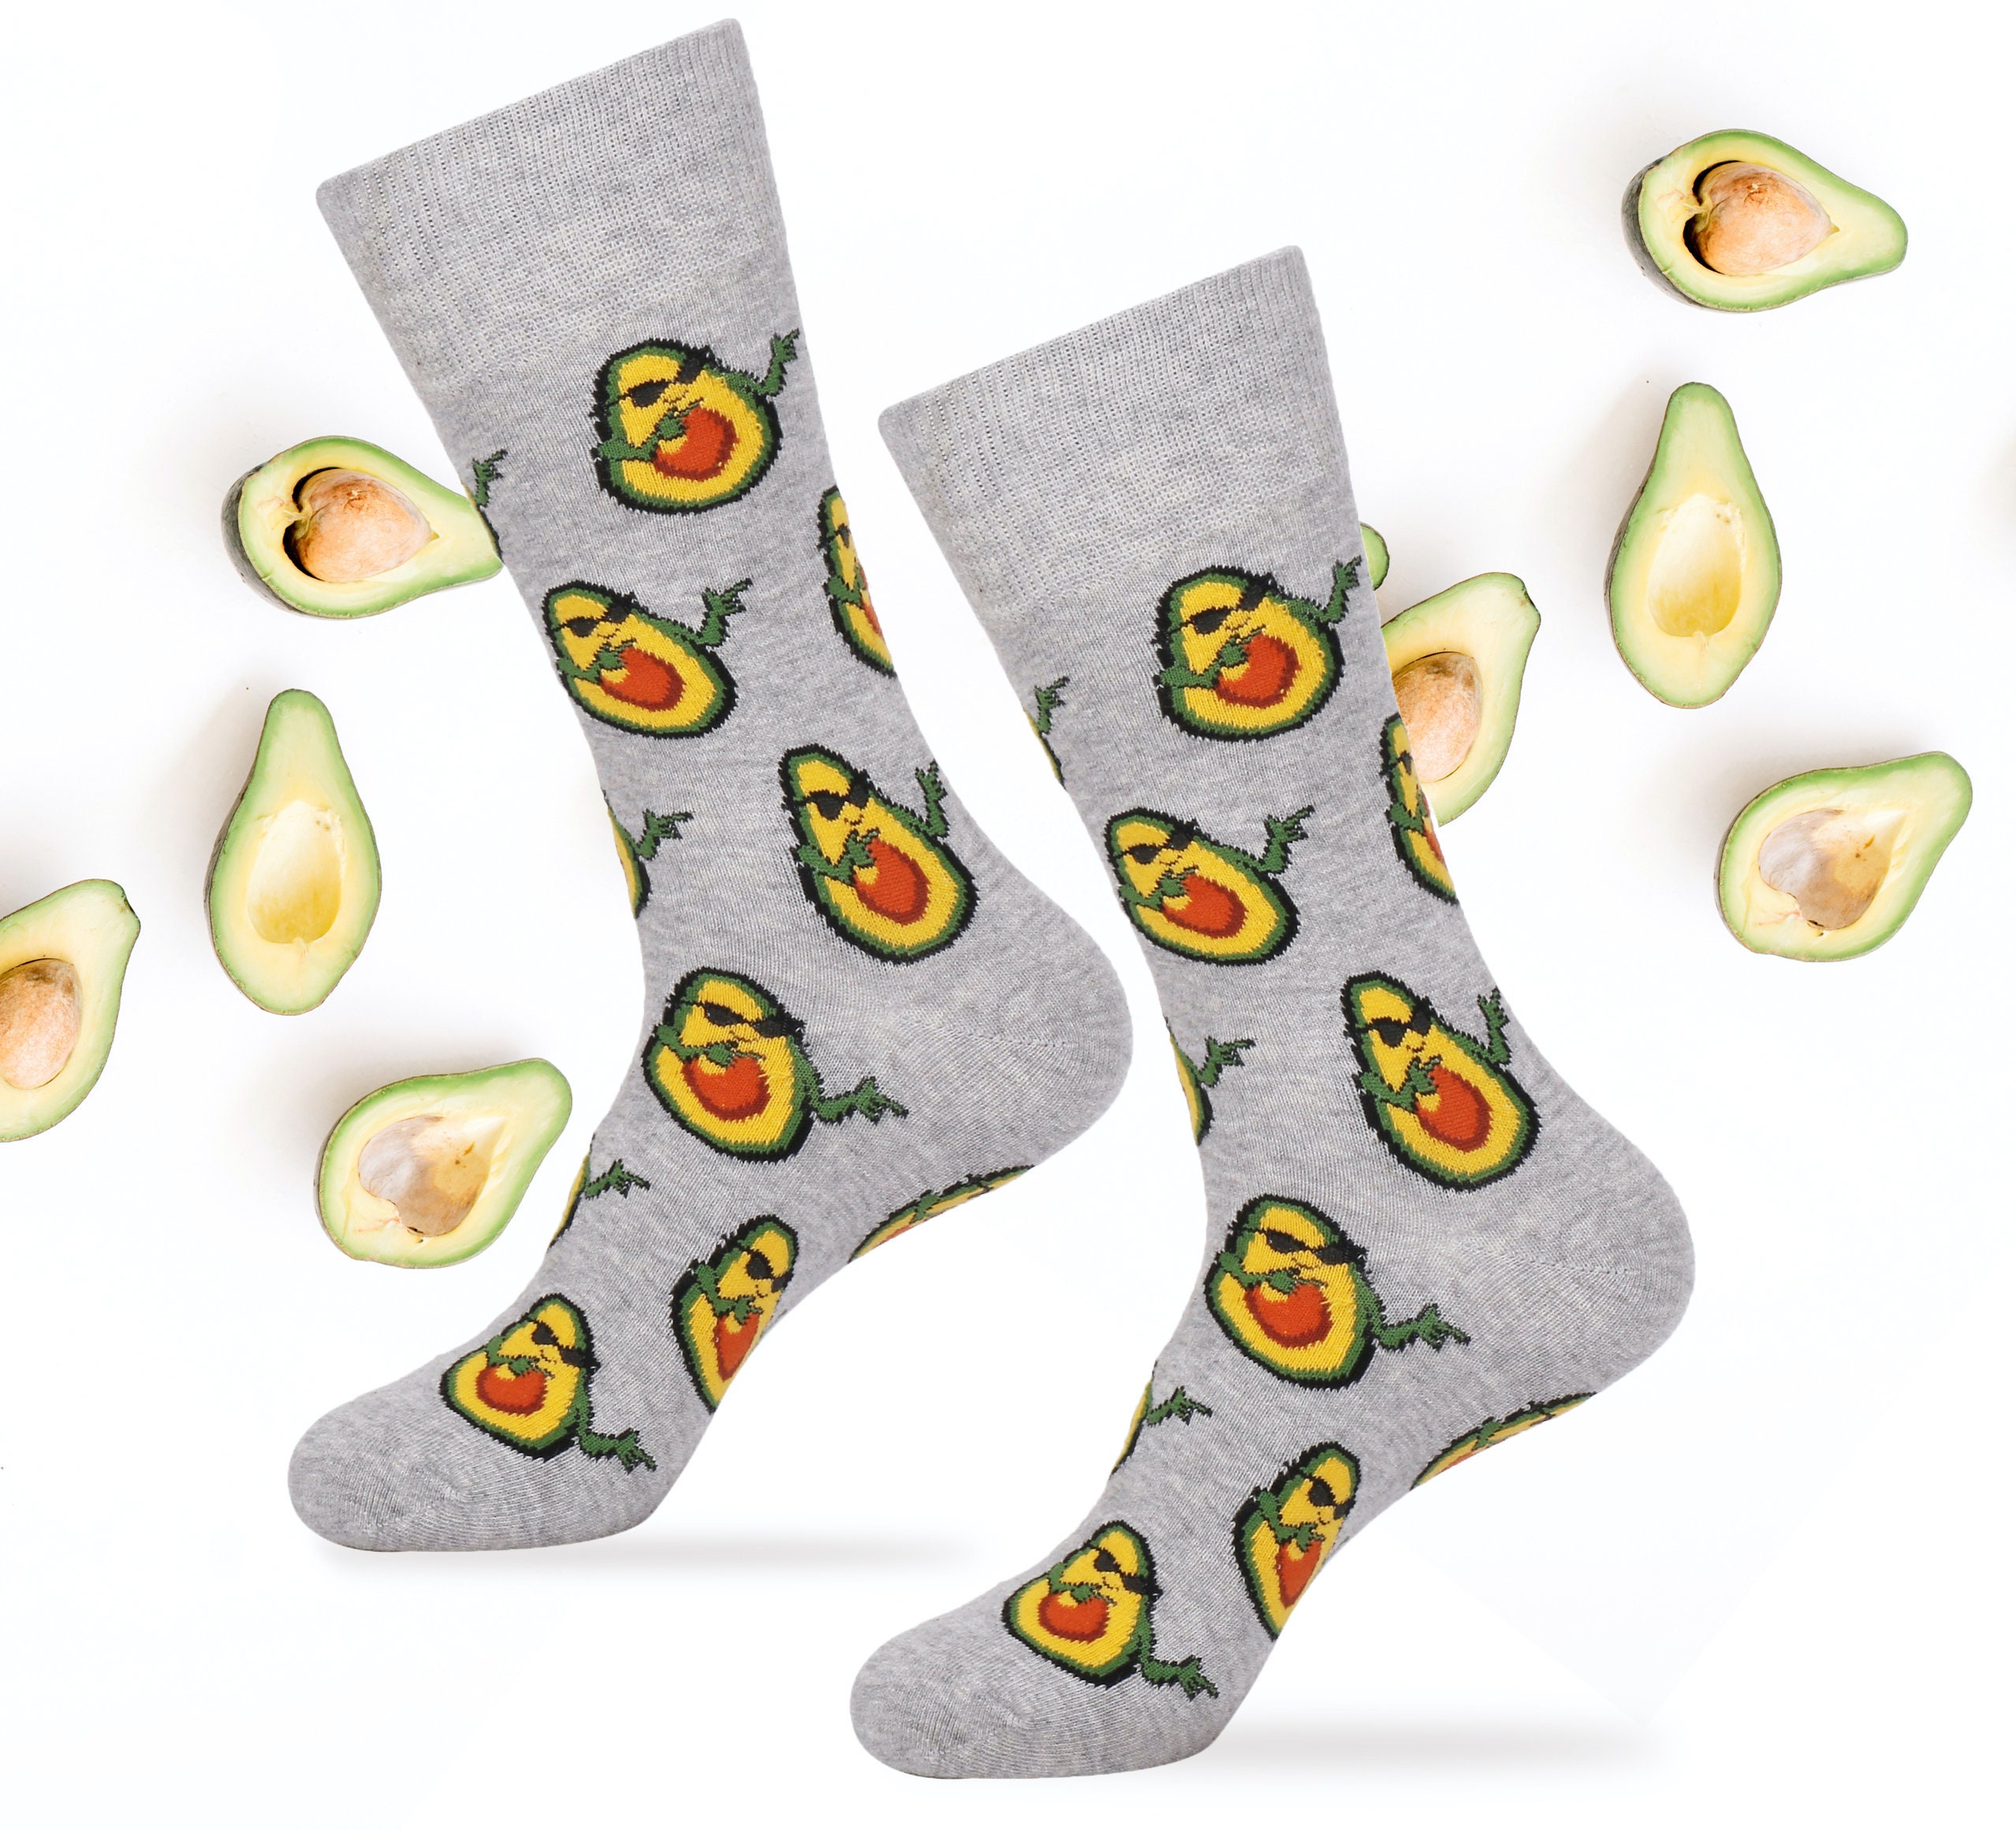 Avocado Socks for Avocado Lovers Cool Avocado Meme Socks Fun Socks ...